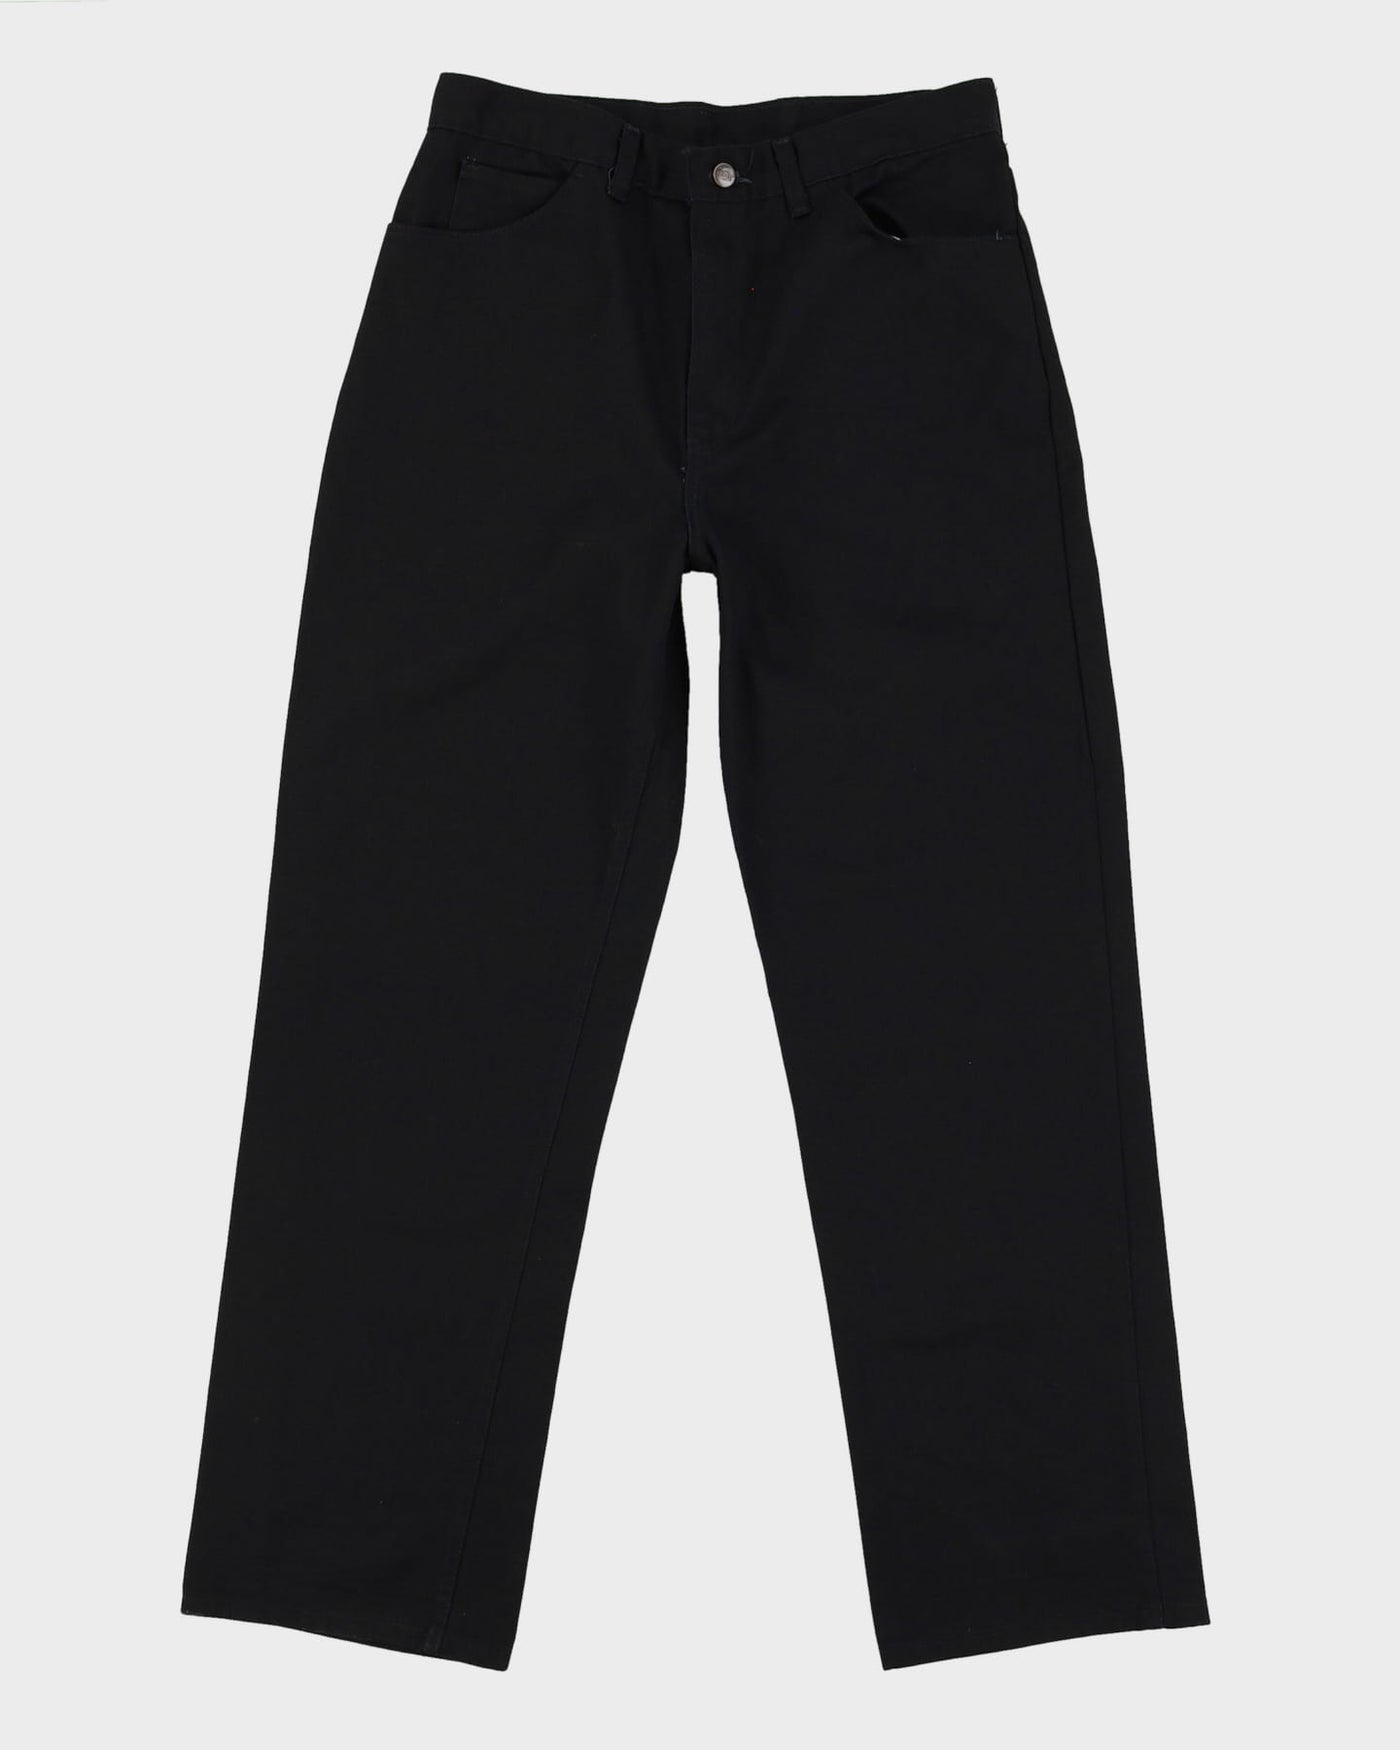 Vintage 90s Dickies Black Workwear Trousers - W33 L31